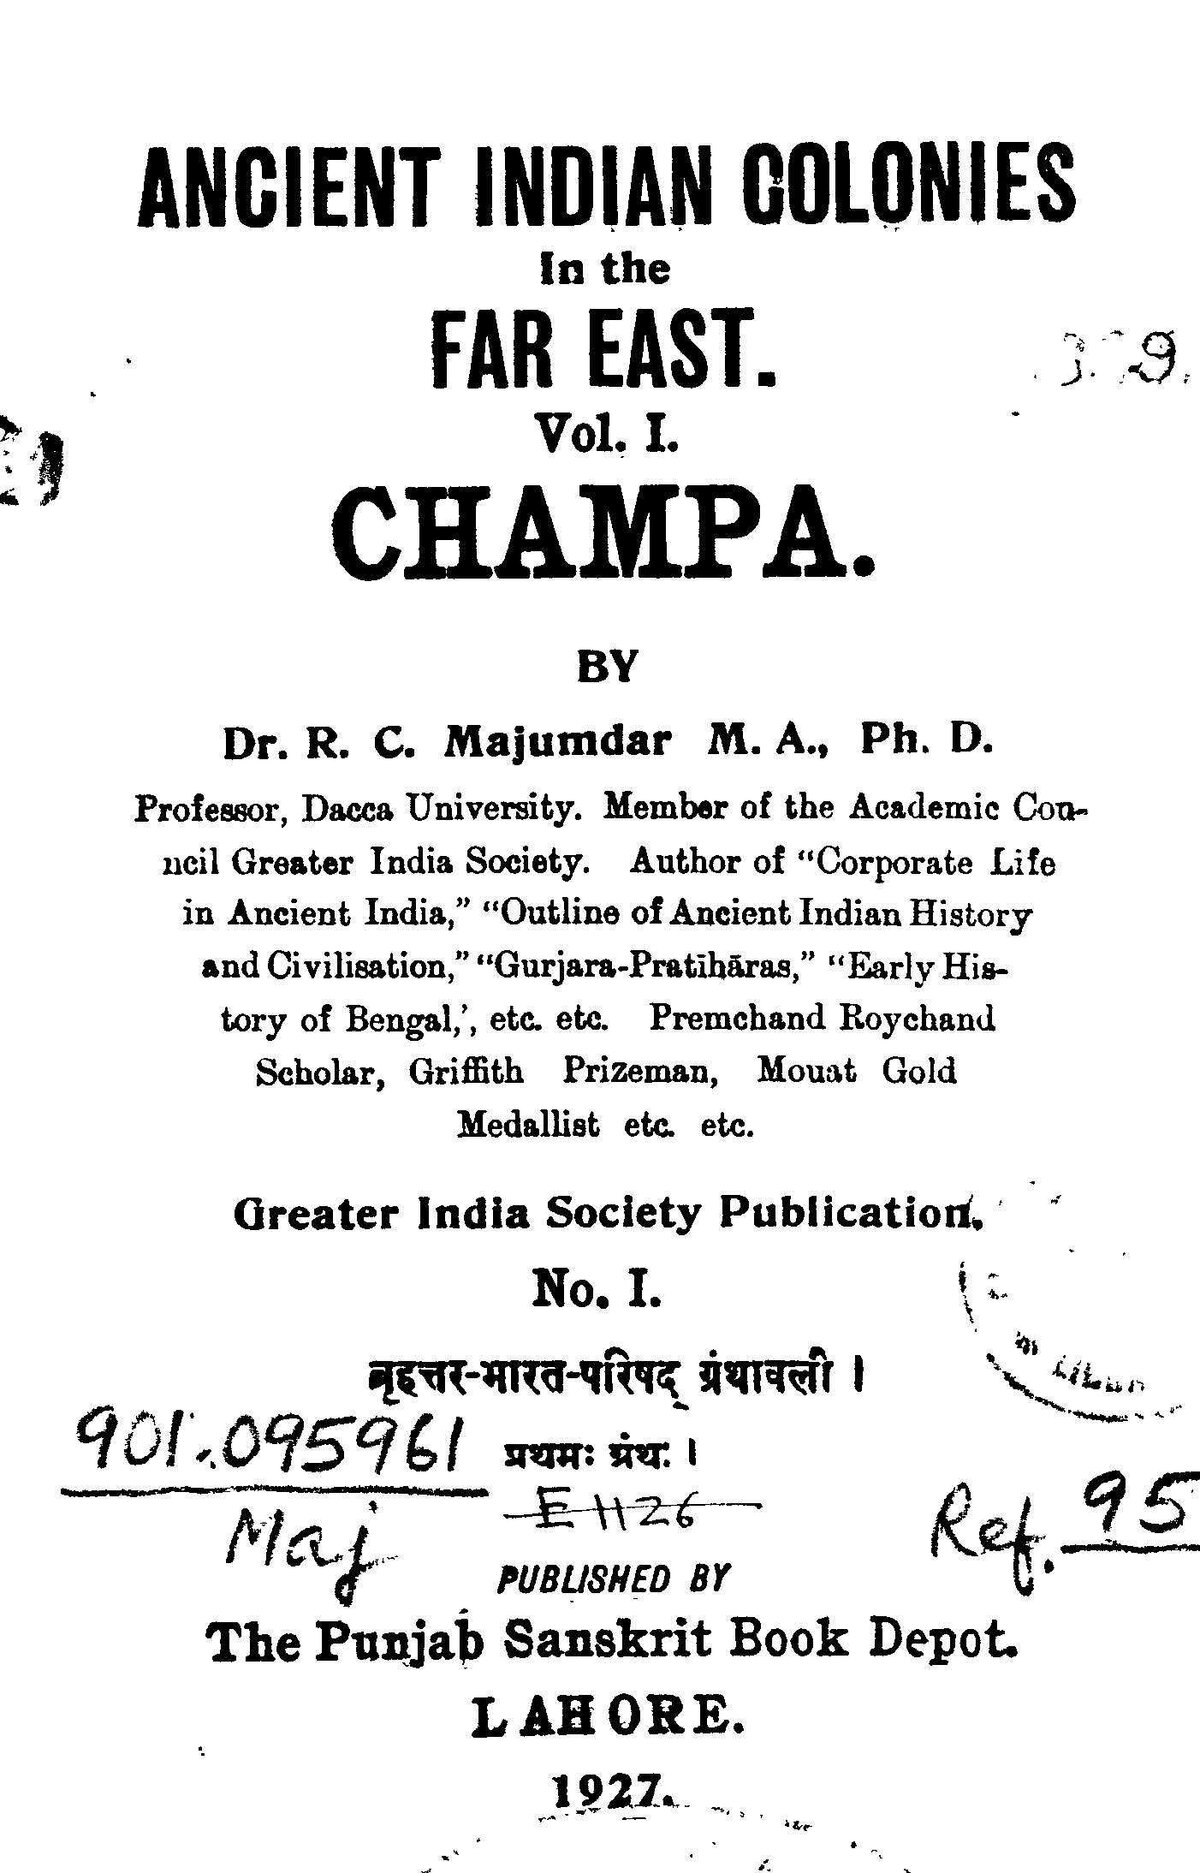 Majumdar&#x20;Champa&#x20;1927&#x20;Cover